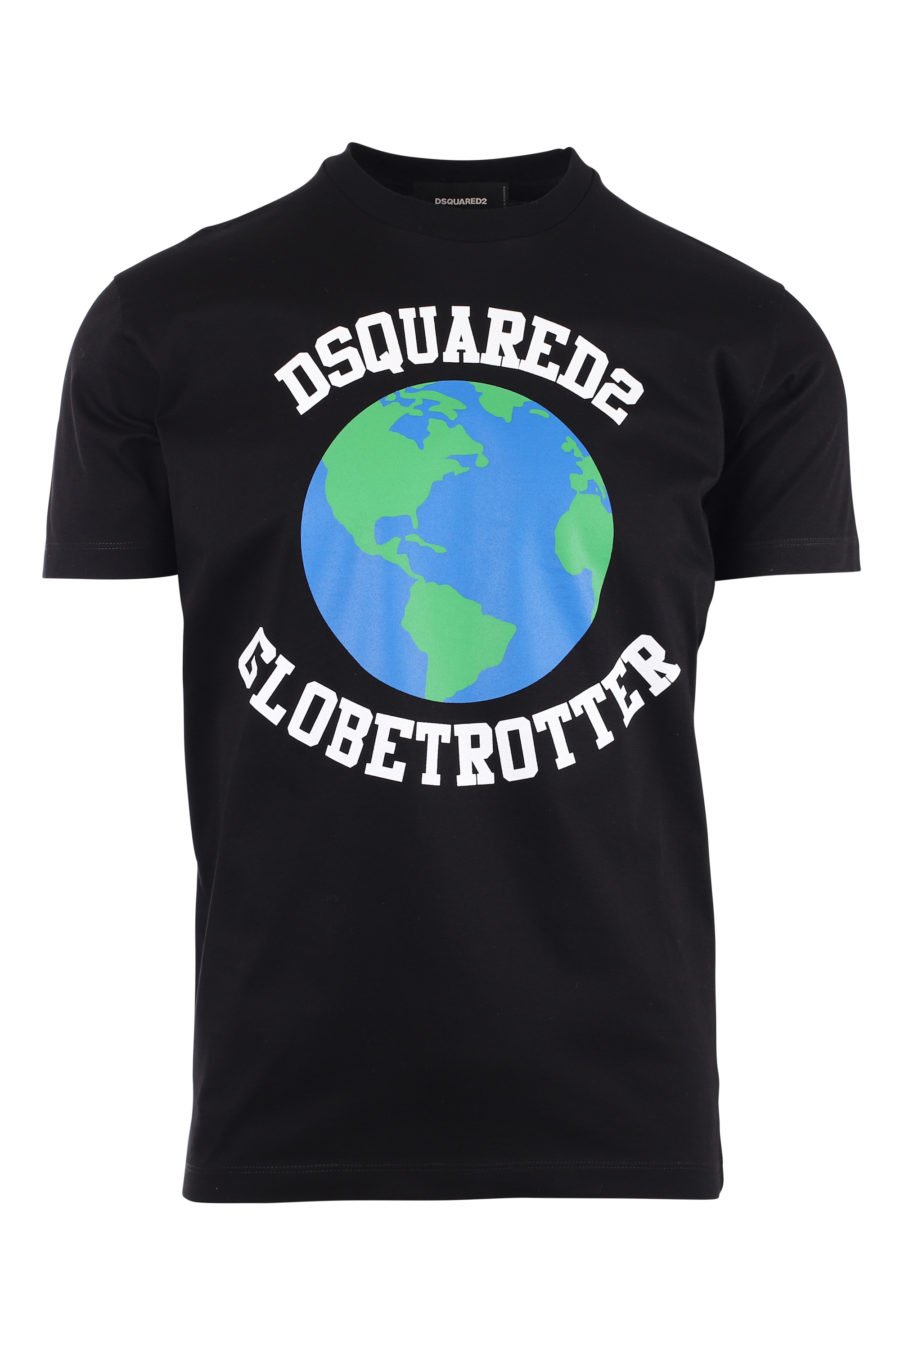 Camiseta negra con logo planeta "globetrotter" - IMG 9724